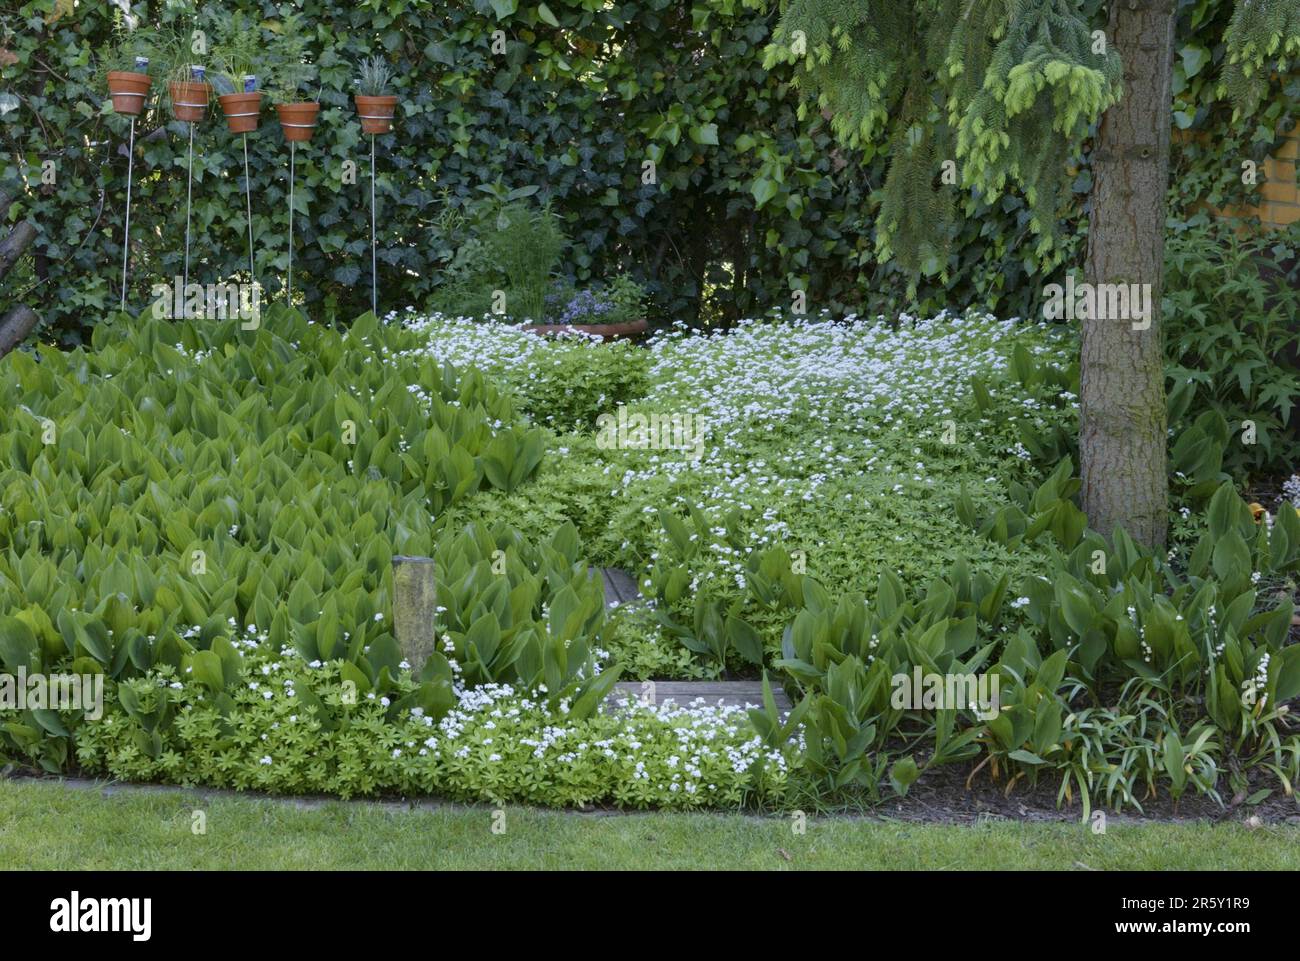 Woodruff (Asperula odorata) (Galium odoratum) Stock Photo